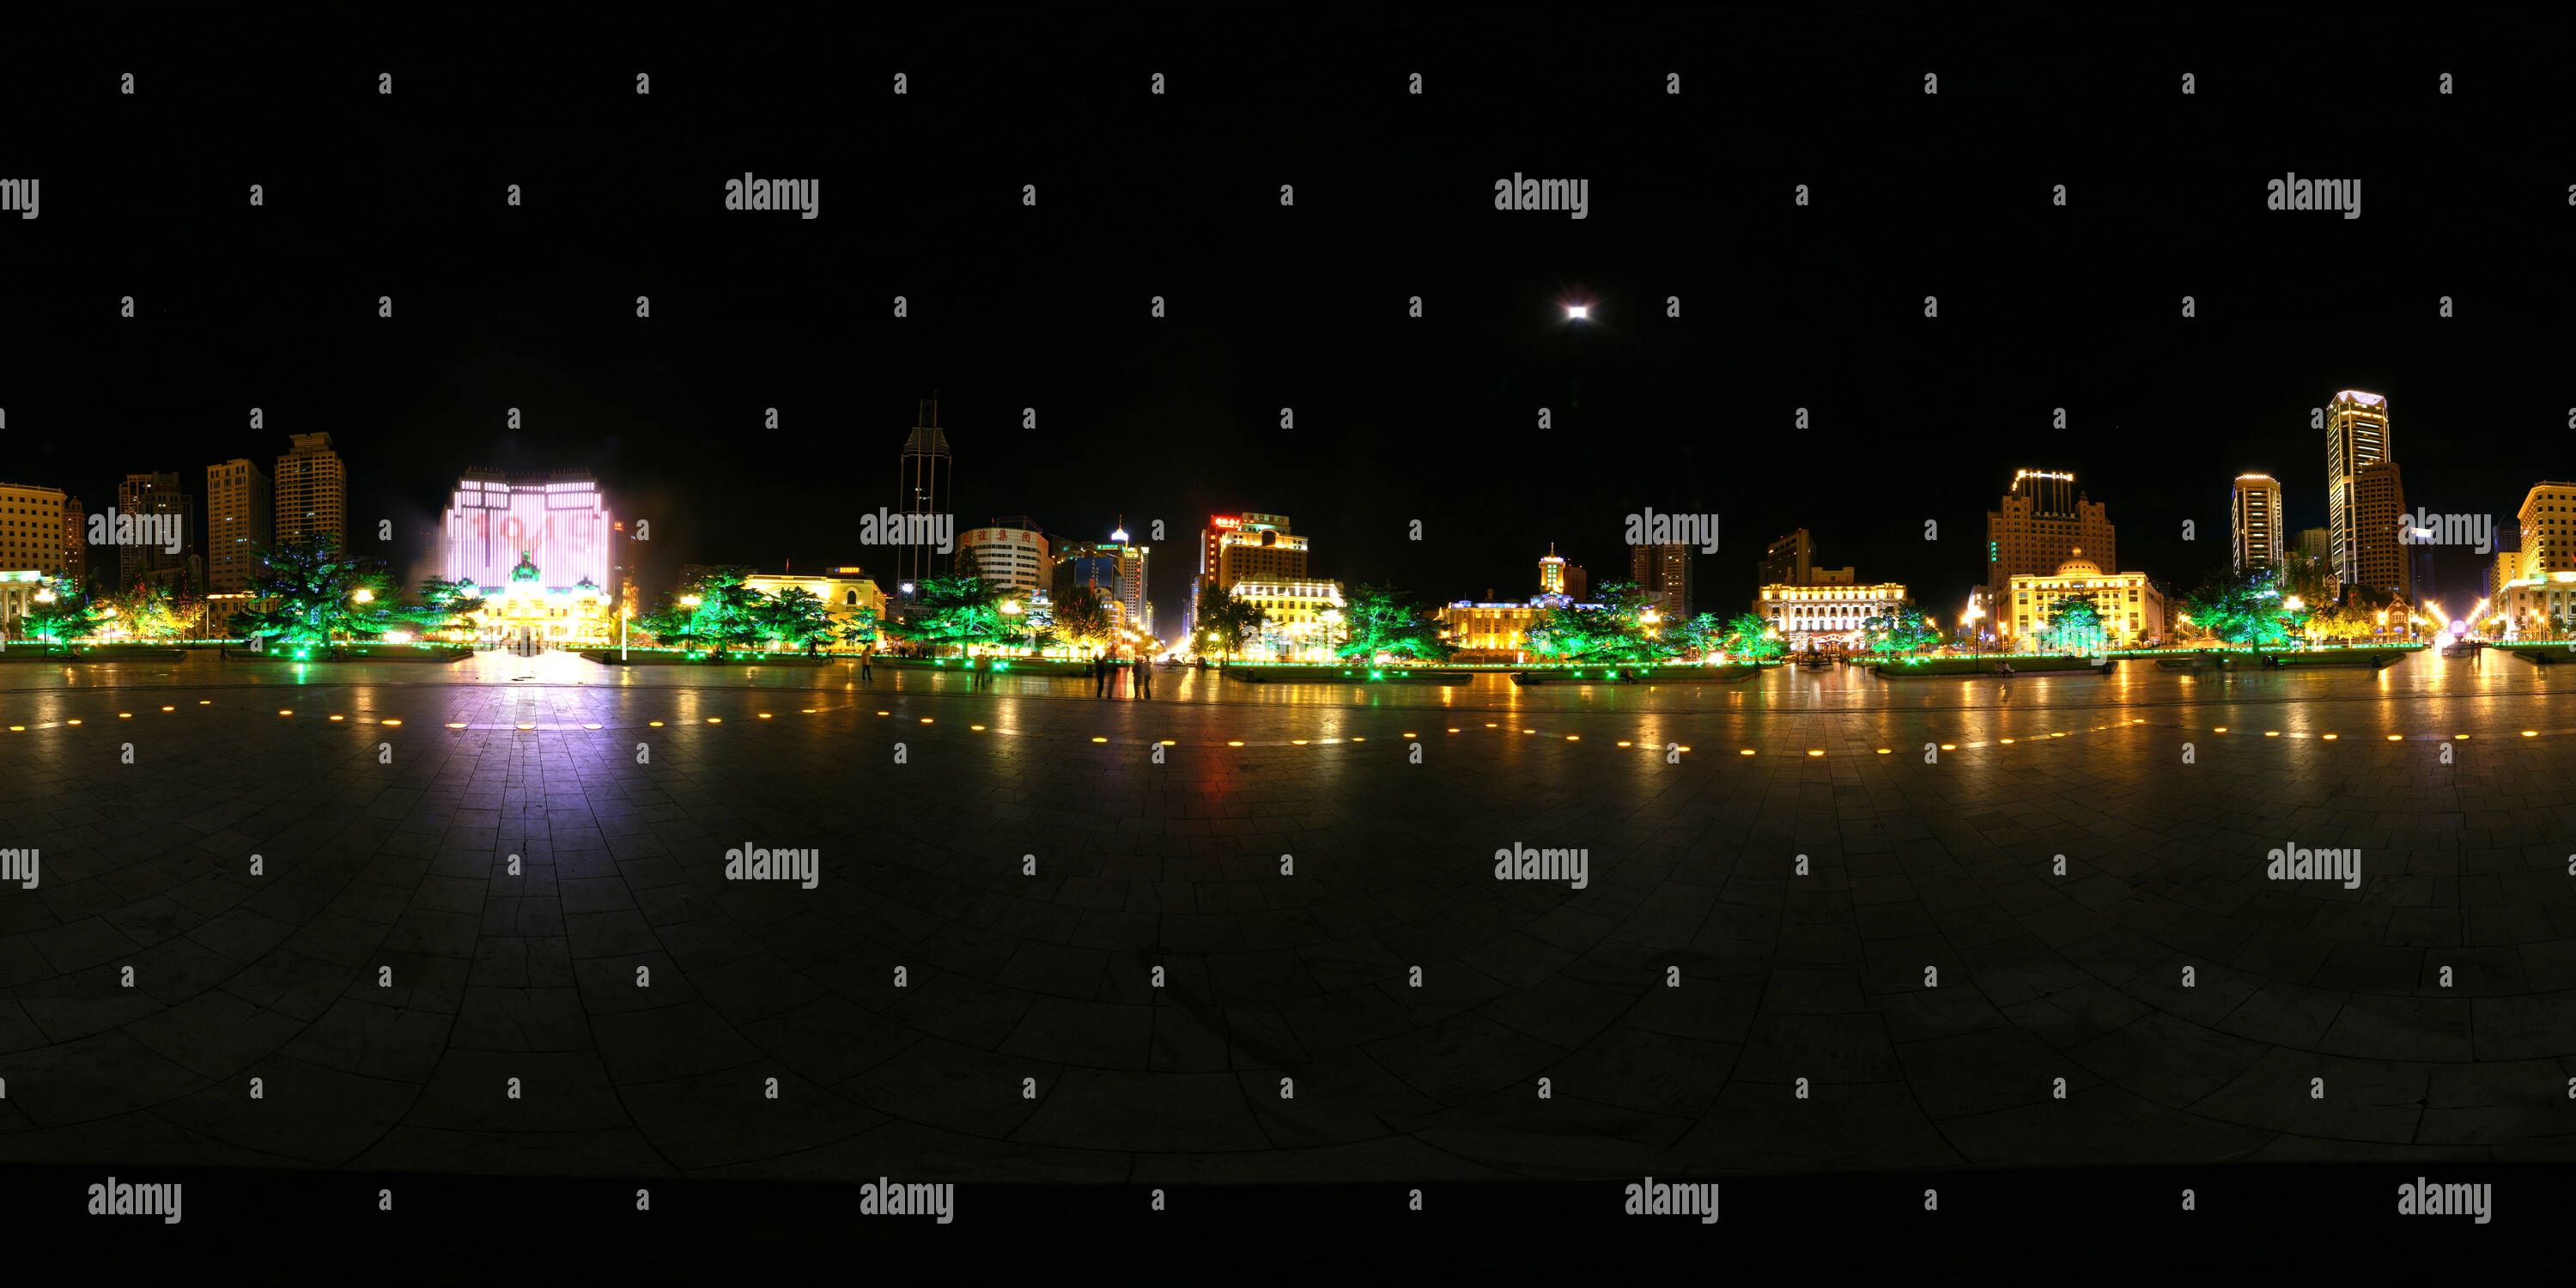 360 degree panoramic view of Dalianzhongshangsquare